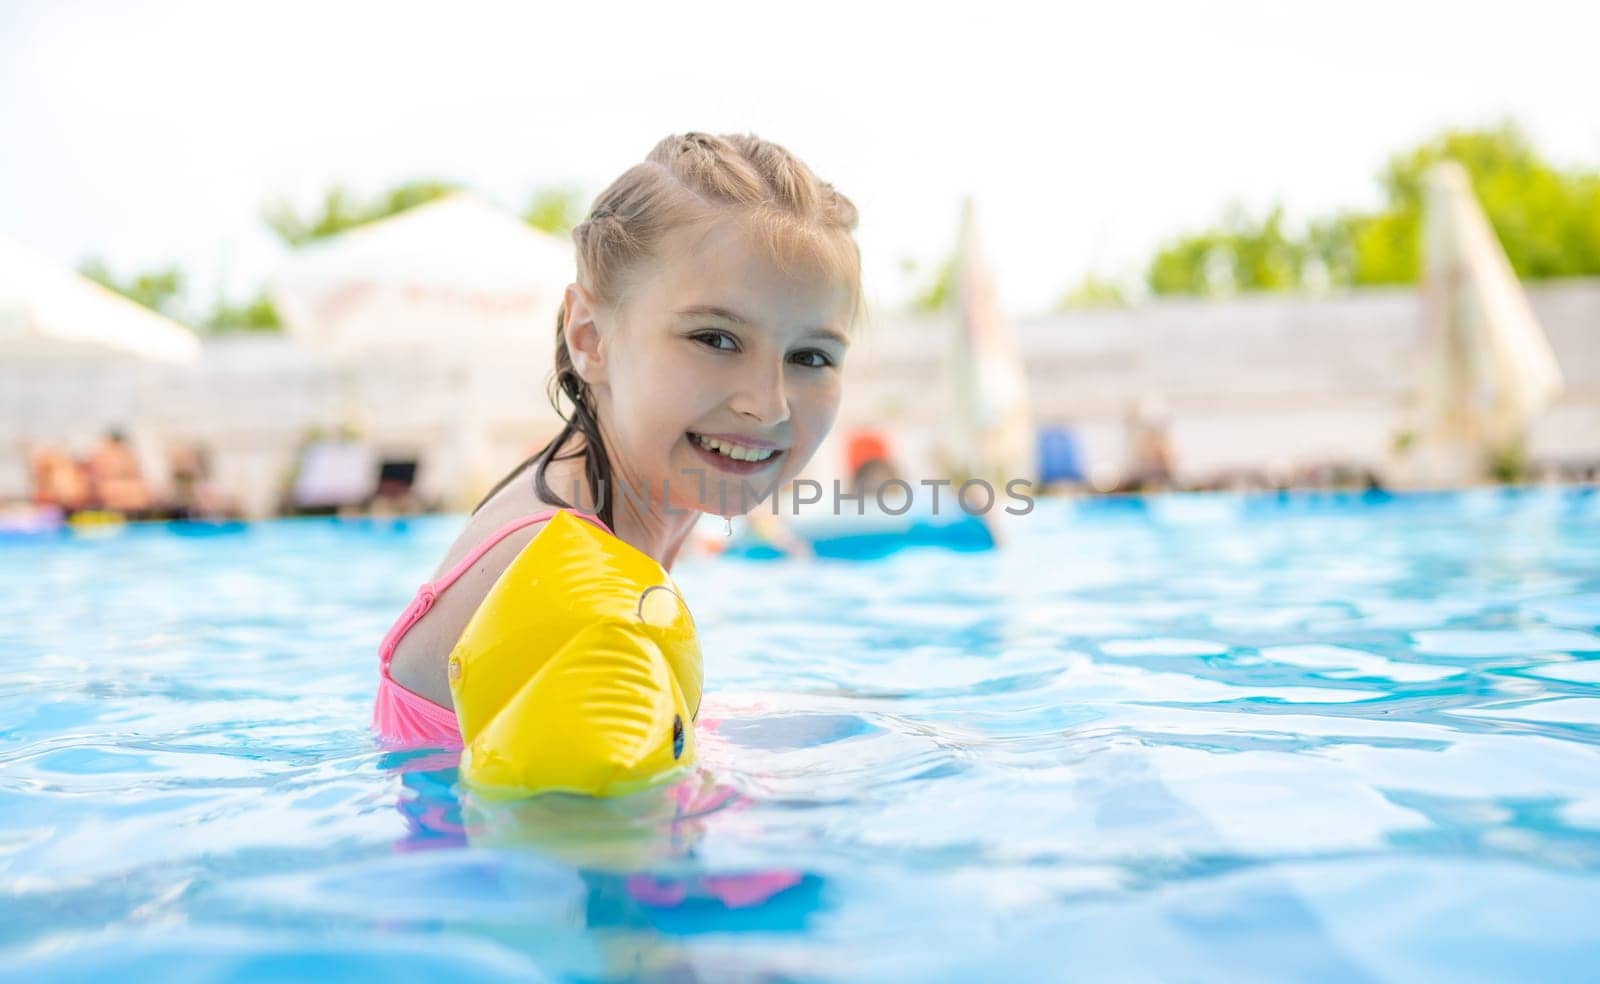 Little girl in pool by GekaSkr